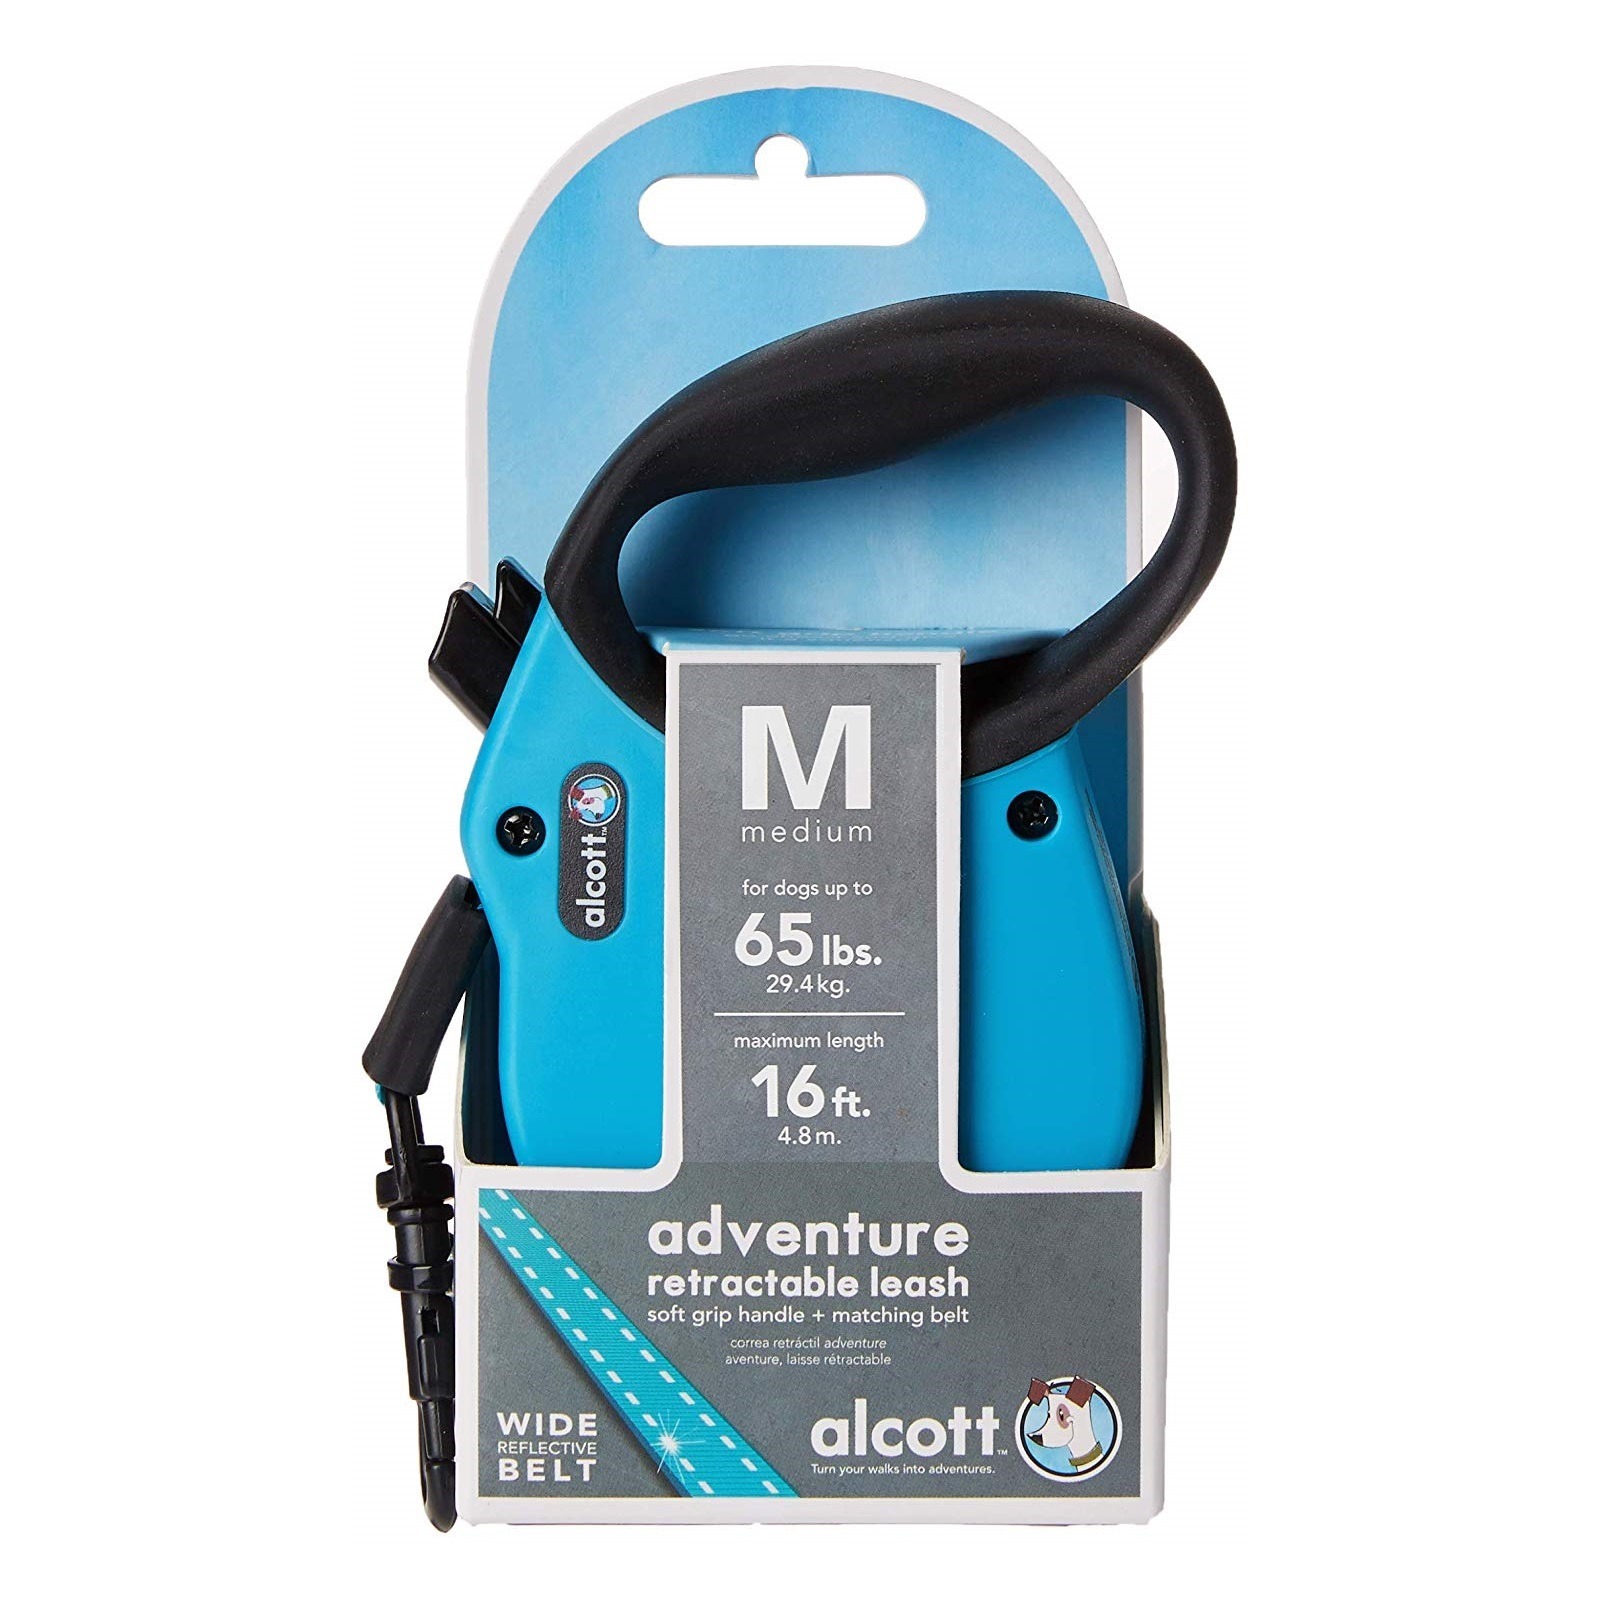 Alcott Flexi-ble Adventure Retractable Tape Dog Leash - Blue image 3